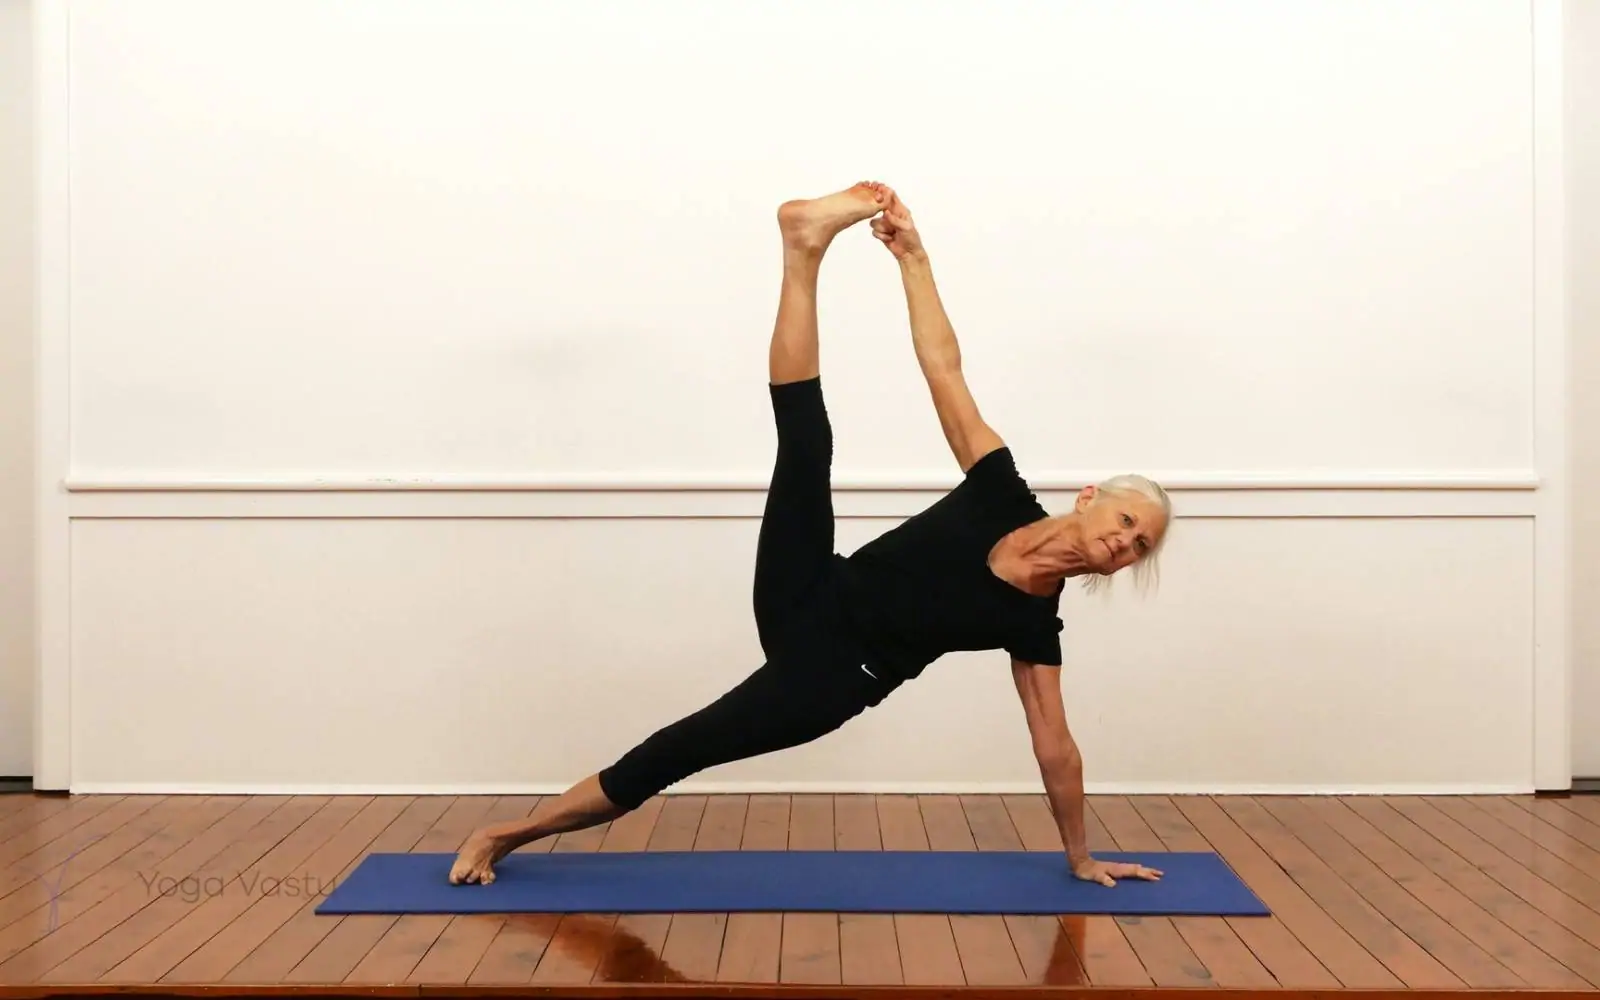 How To Do A Side Plank Yoga Pose or Vasishtasana For Benefits - Danis K -  Medium